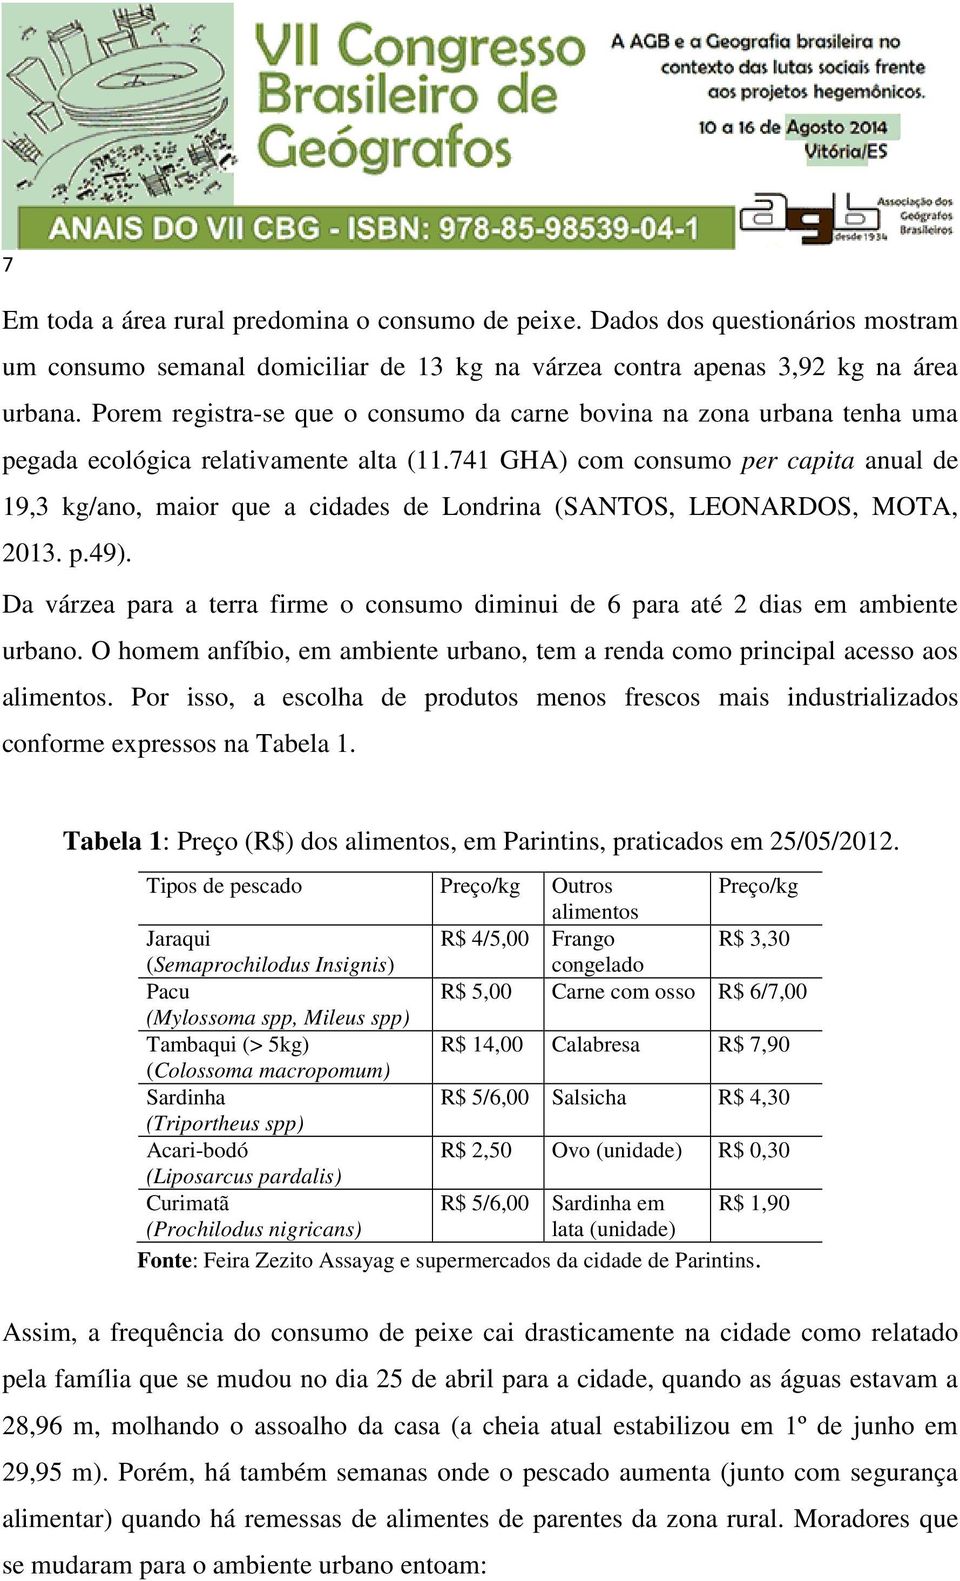 741 GHA) com consumo per capita anual de 19,3 kg/ano, maior que a cidades de Londrina (SANTOS, LEONARDOS, MOTA, 2013. p.49).